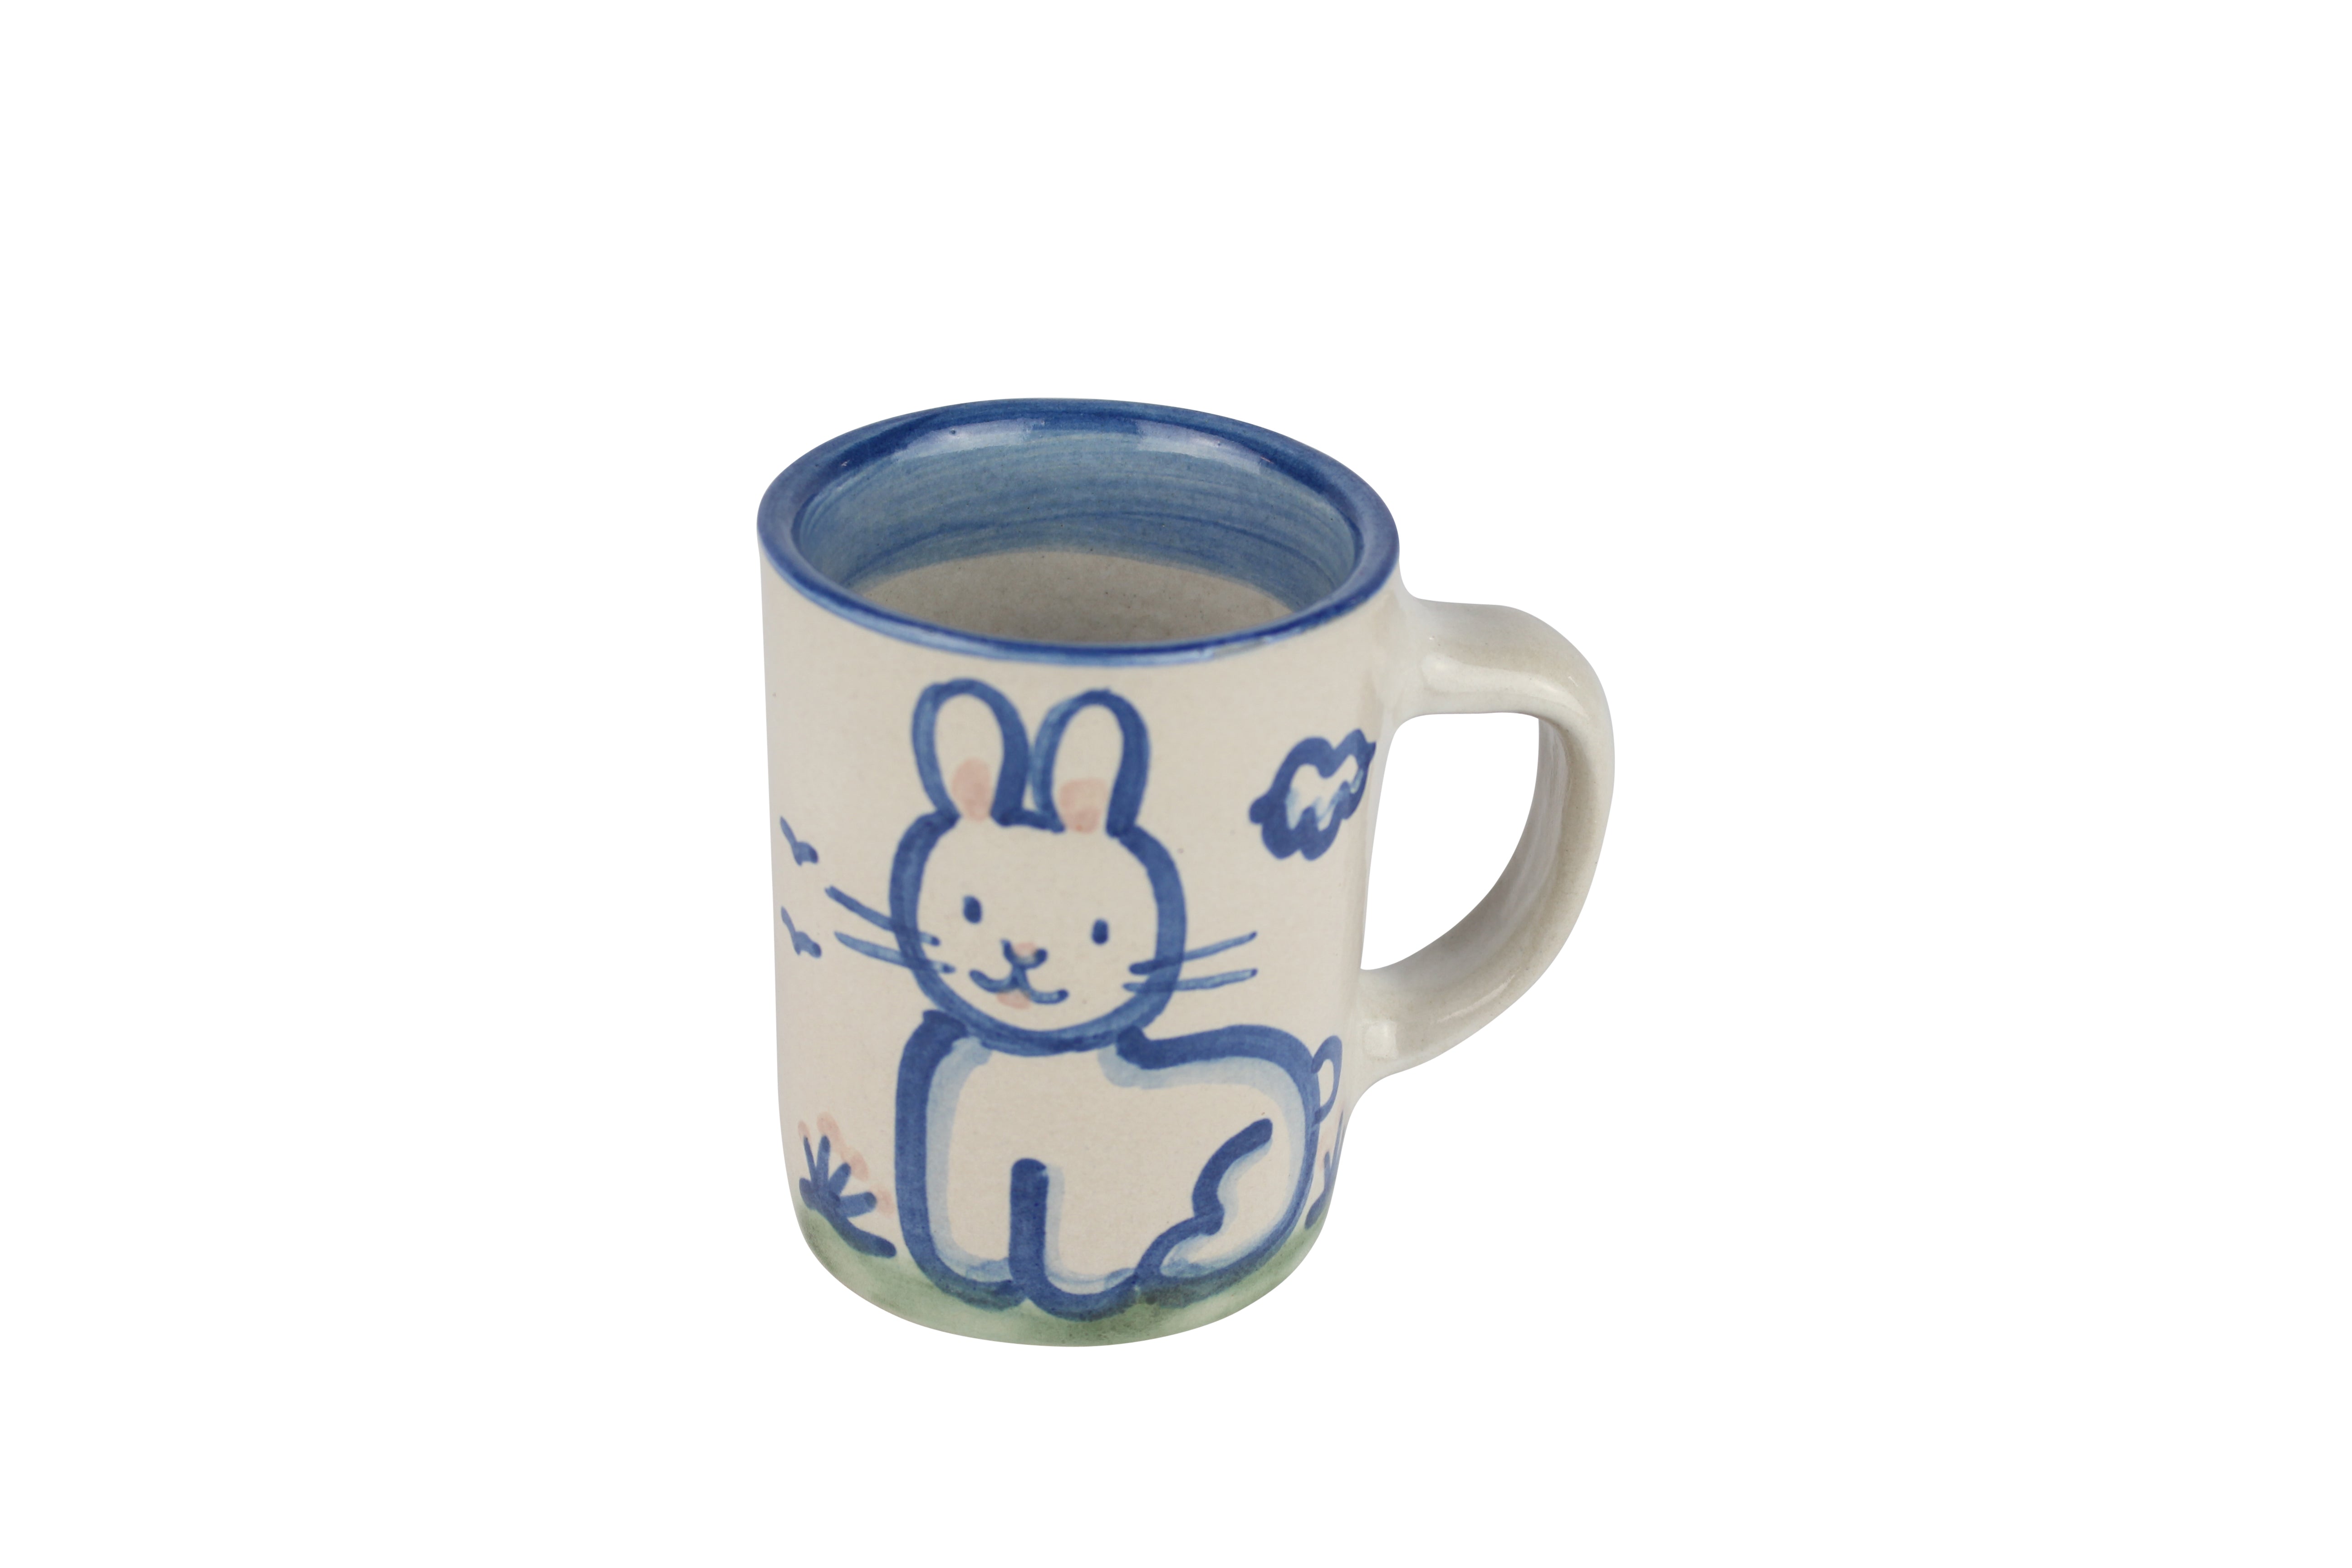 8 Oz. Mug - Rabbit